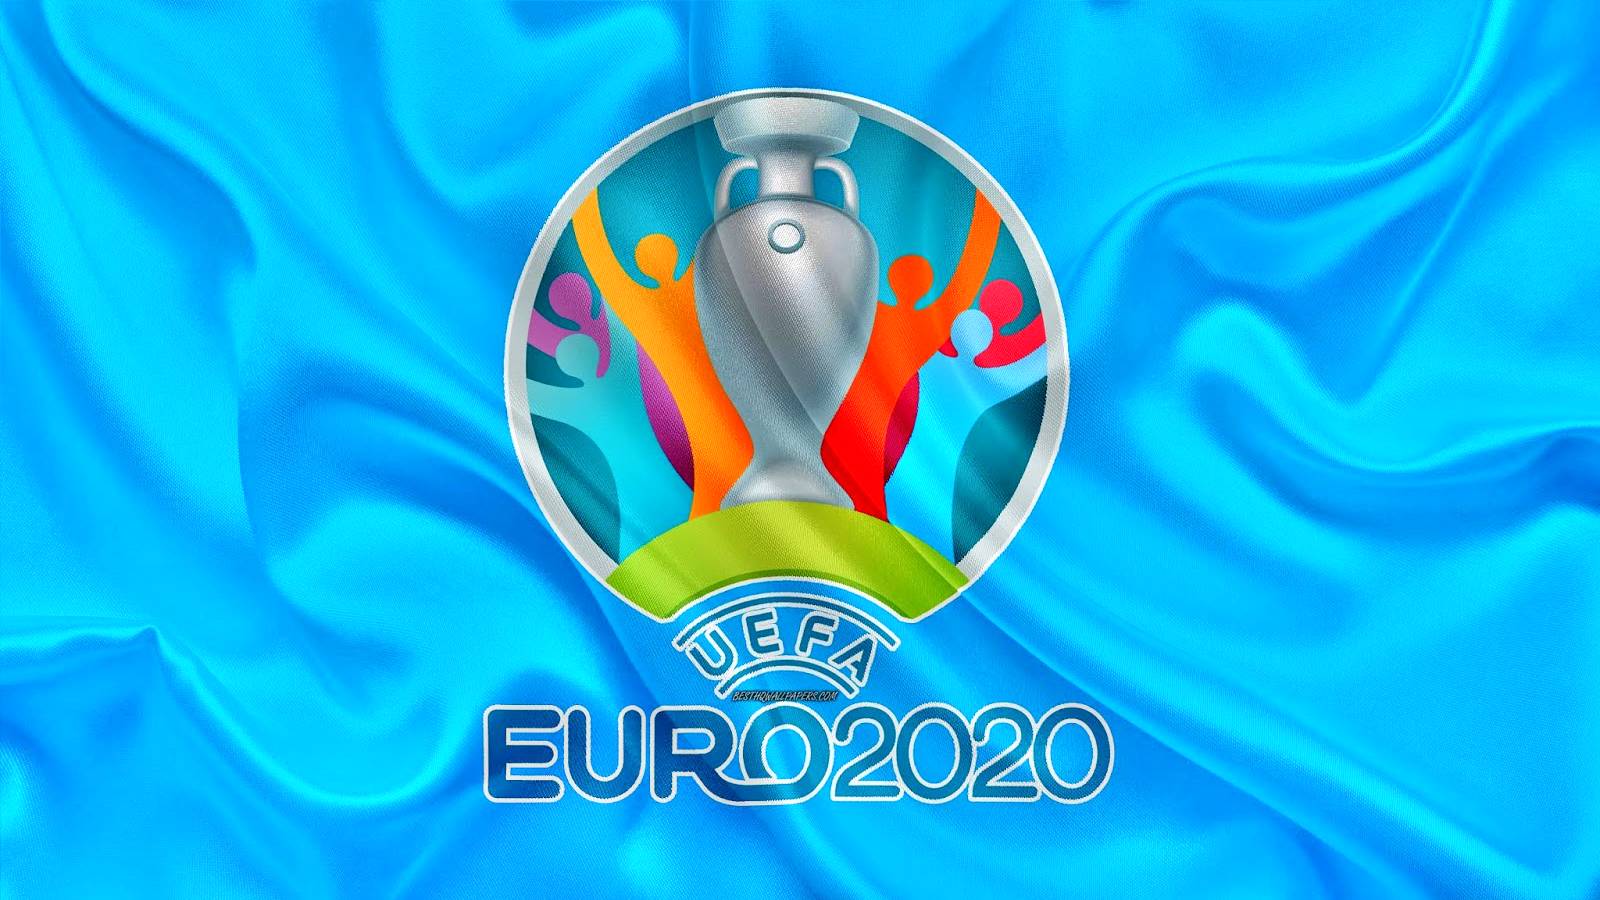 Player coronavirus detected positive EURO 2020